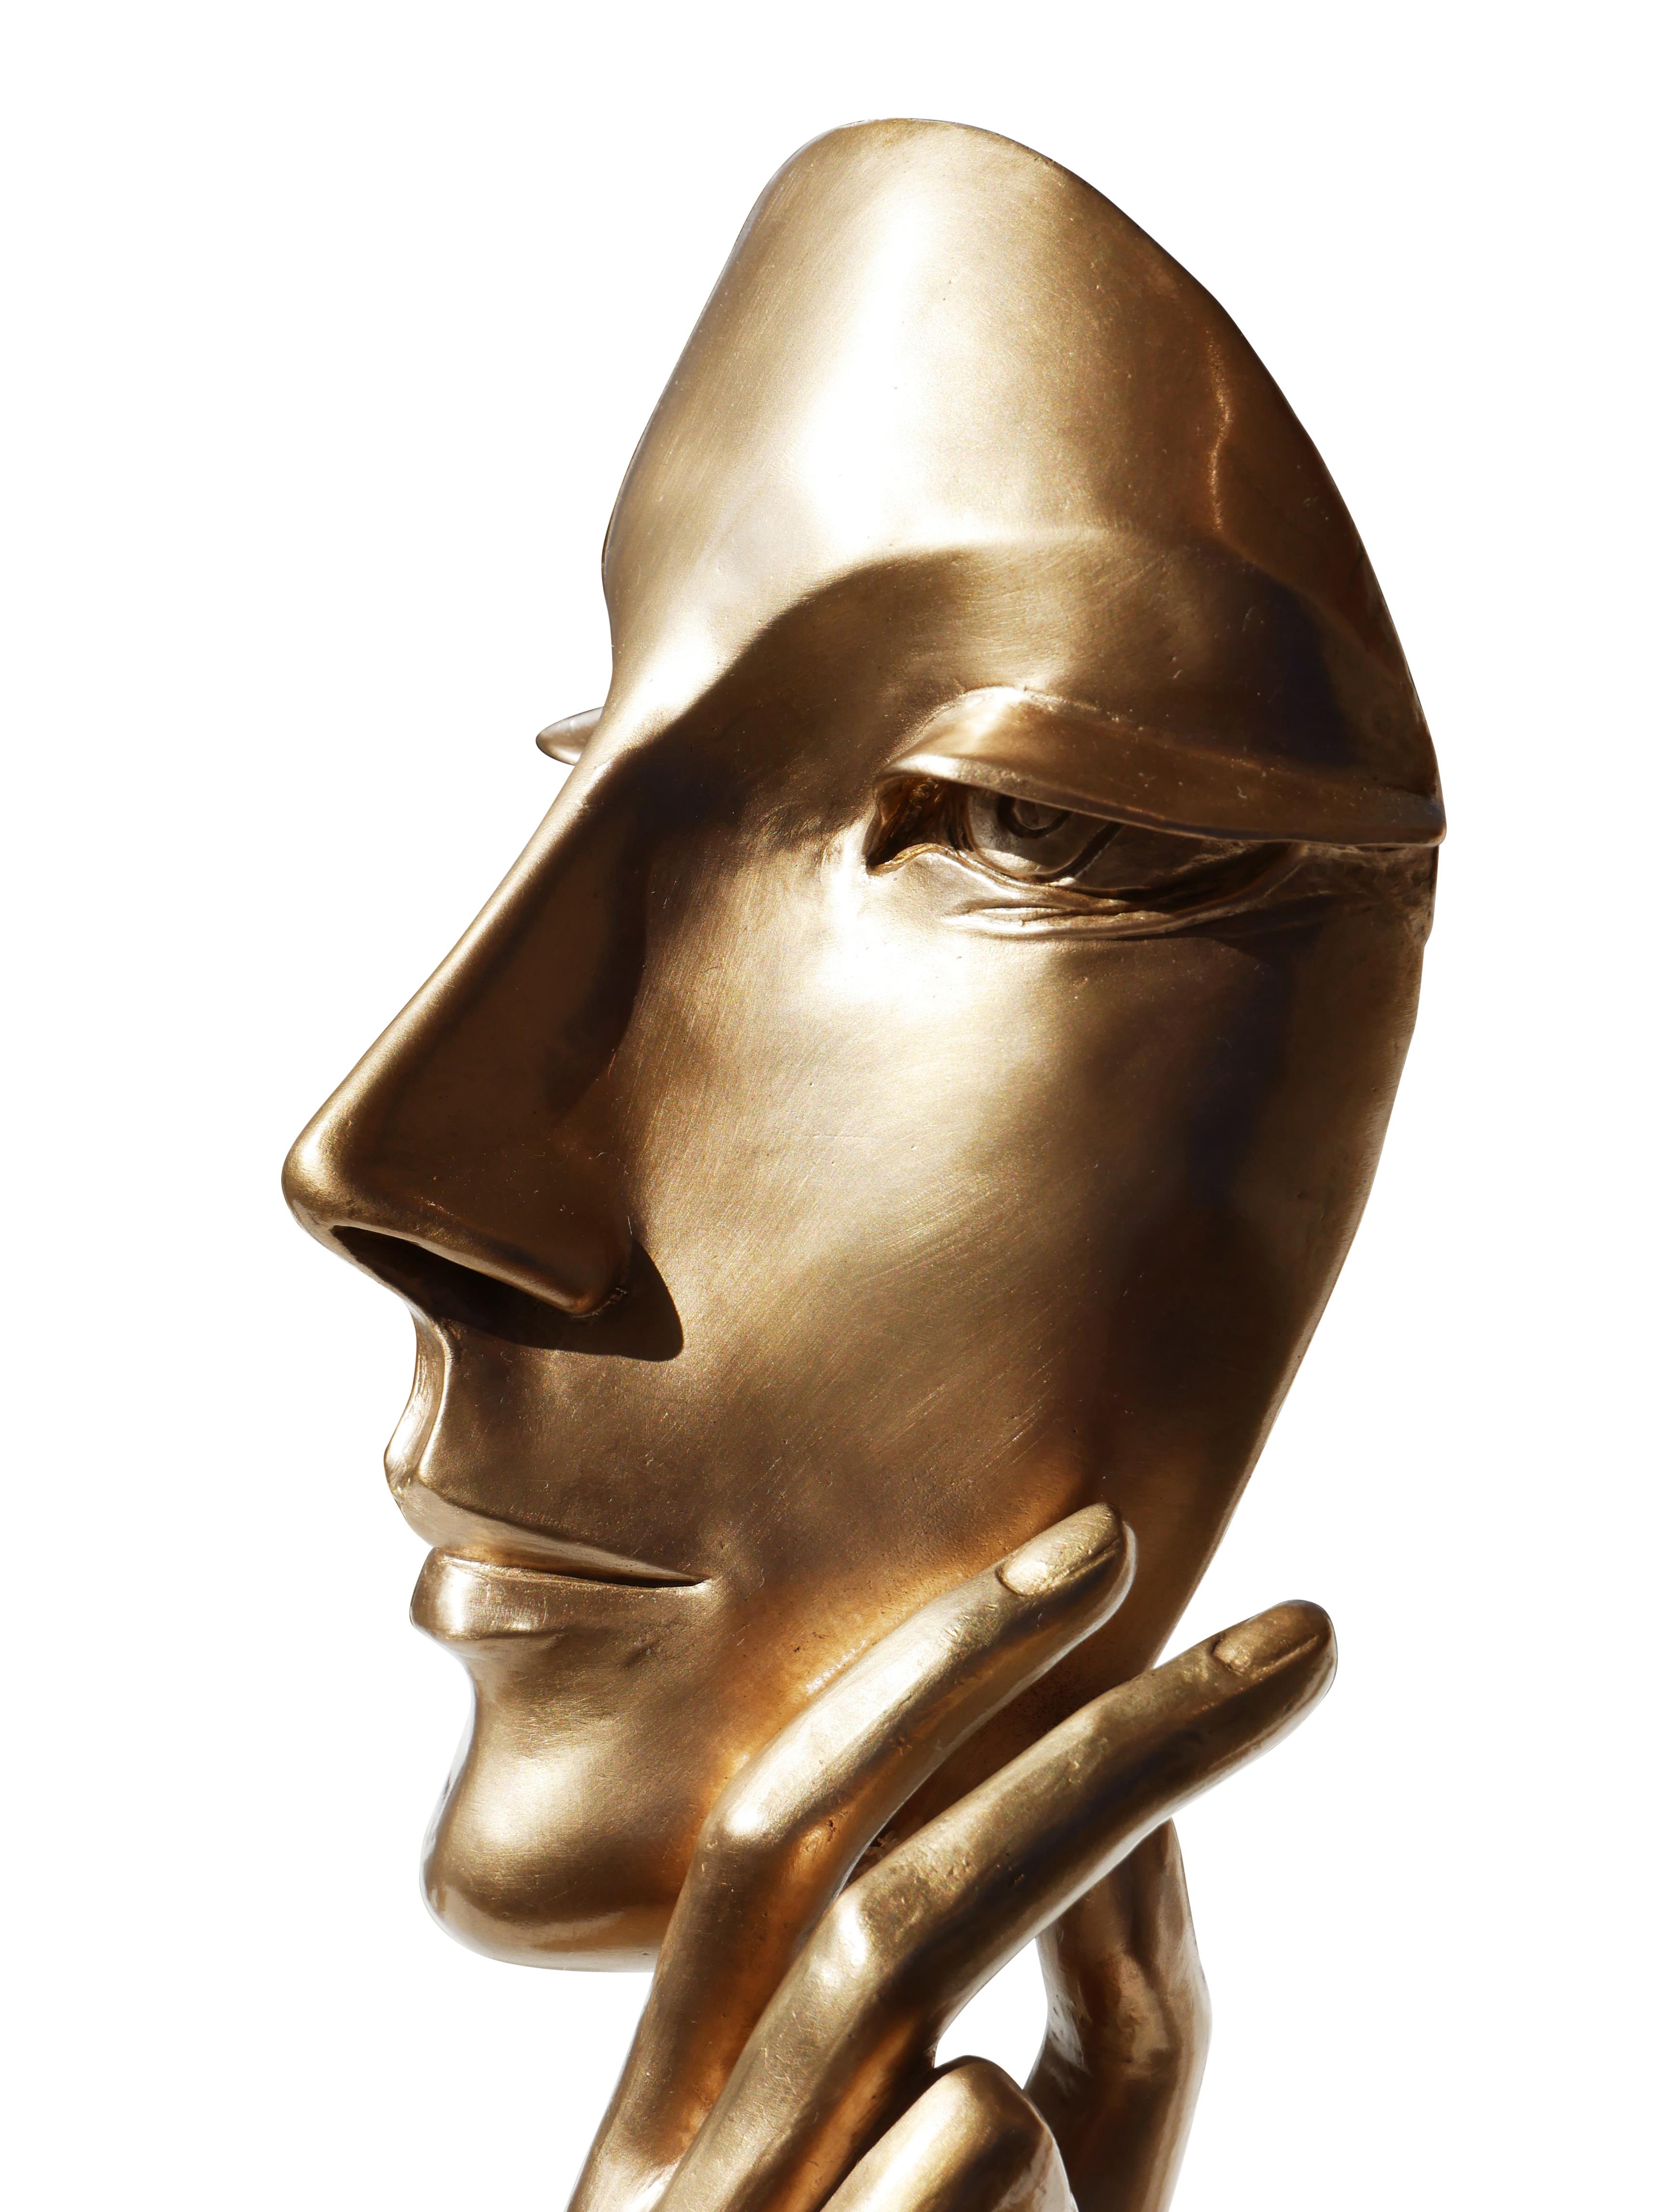 Face féminine moderniste abstraite avec bras sculpté en bronze - Moderne Sculpture par David Adickes